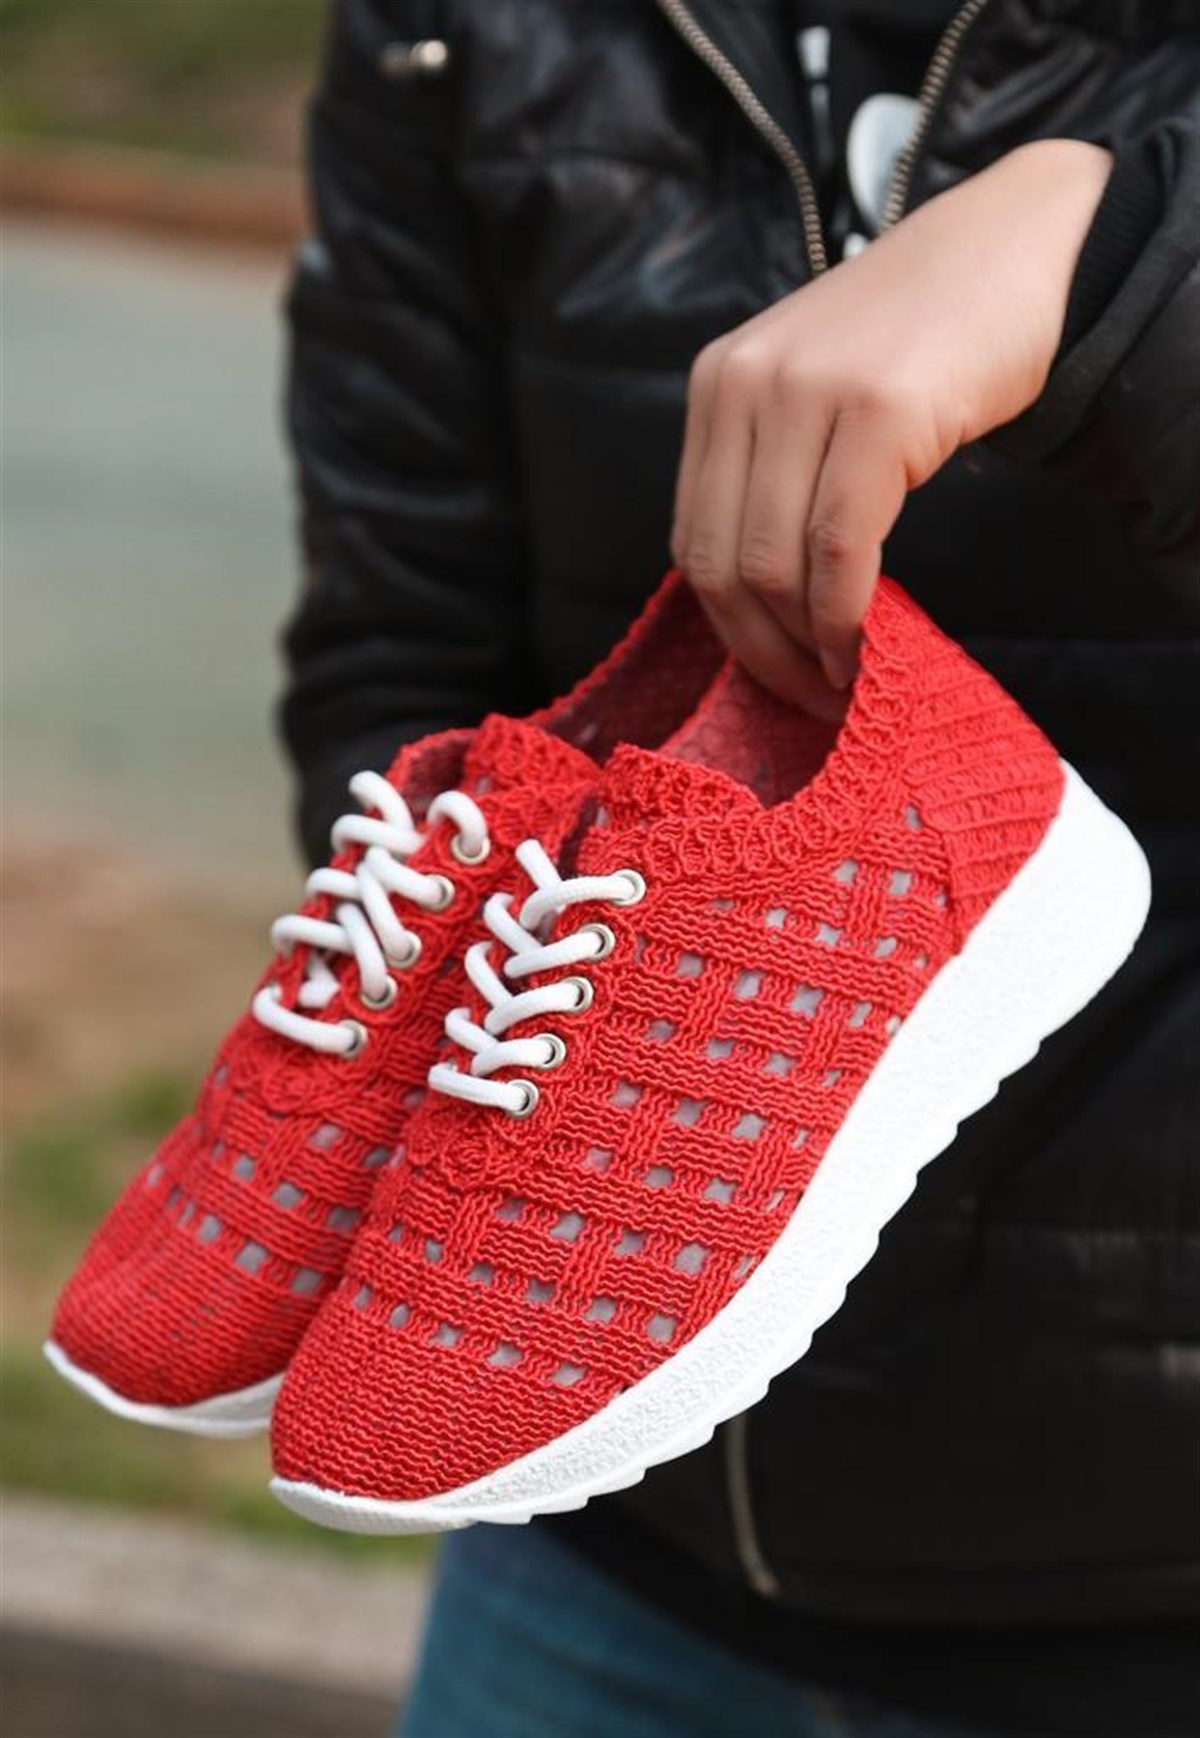 Kadın El Örgüsü Kırmızı Spor Ayakkabı Belen - Bitmedeniste